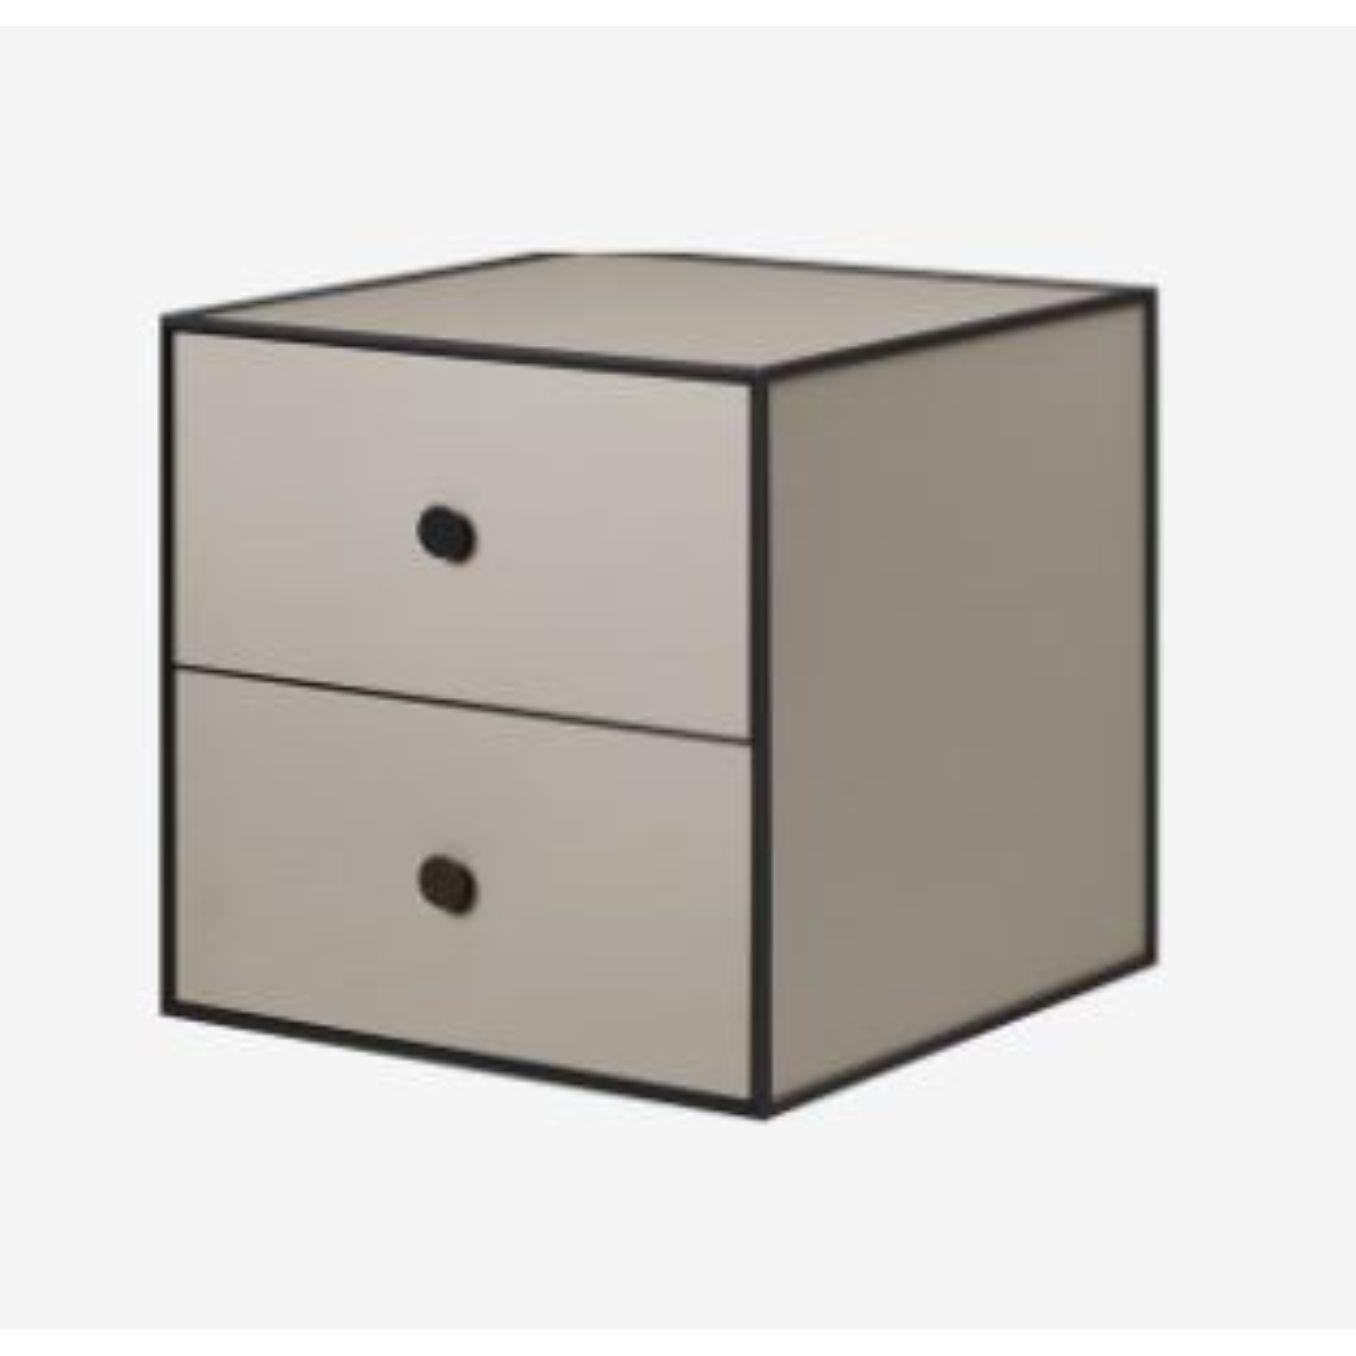 35 Boîte à cadre en sable avec 2 tiroirs de Lassen
Dimensions : L 35 x P 35 x H 35 cm 
Matériaux : Finér, mélaminé, mélaminé, mélaminé, métal, placage,
Disponible également en différentes couleurs et dimensions. 
Poids : 10.50, 10.50, 11.50, 11.50